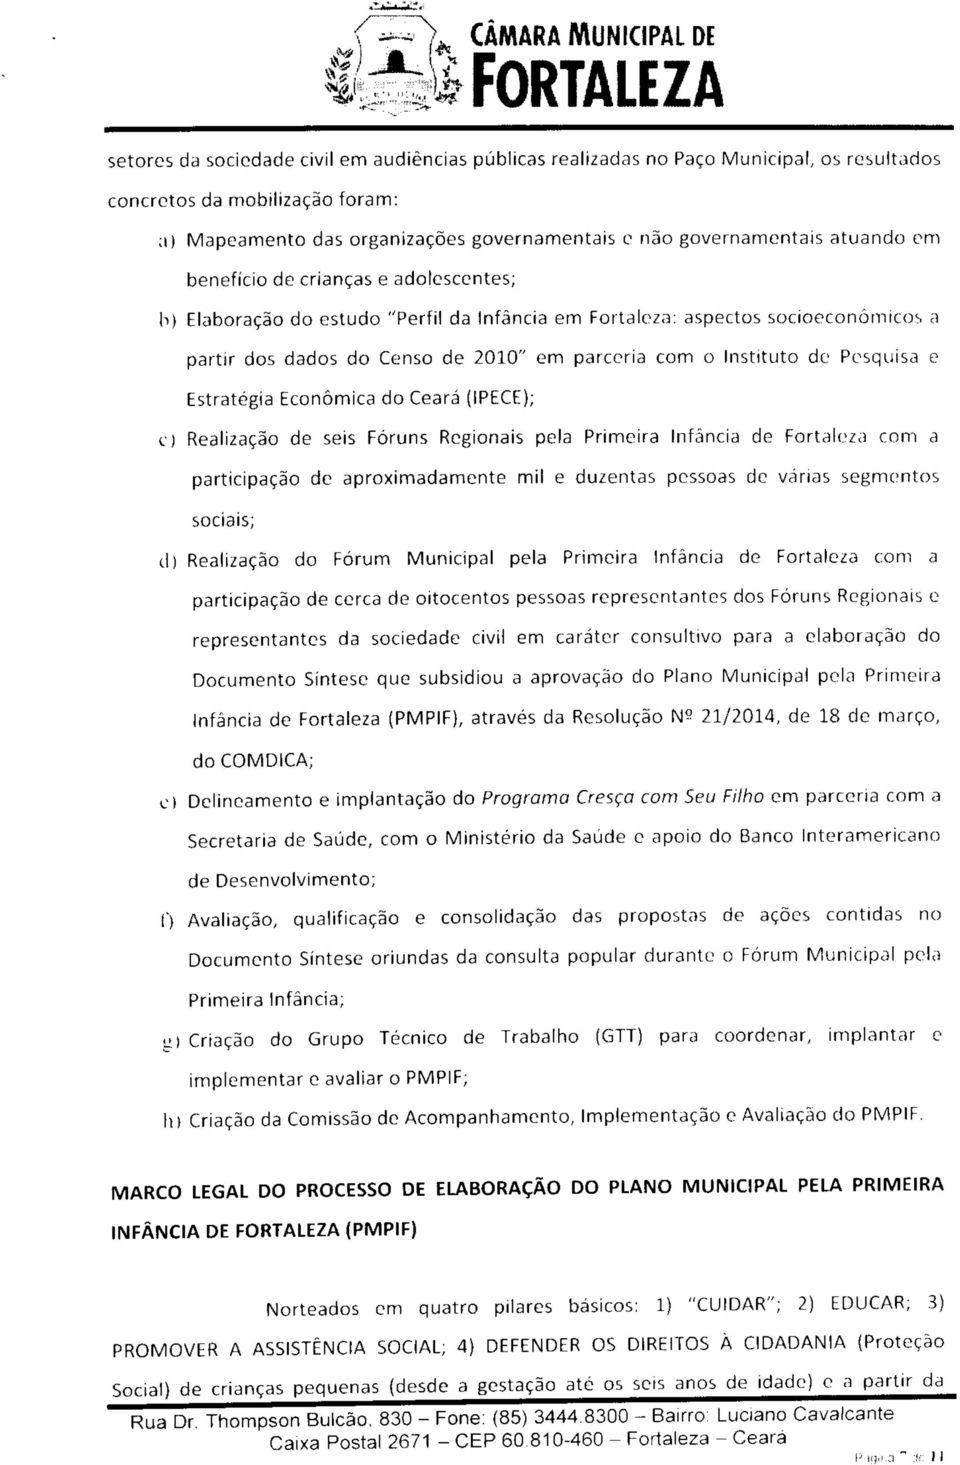 Pesquisa e Estratégia Económica do Ceará (IPECE); c) Realização de seis Fóruns Regionais pela Primeira Infância de Fortaleza com a participação de aproximadamente mil e duzentas pessoas de várias